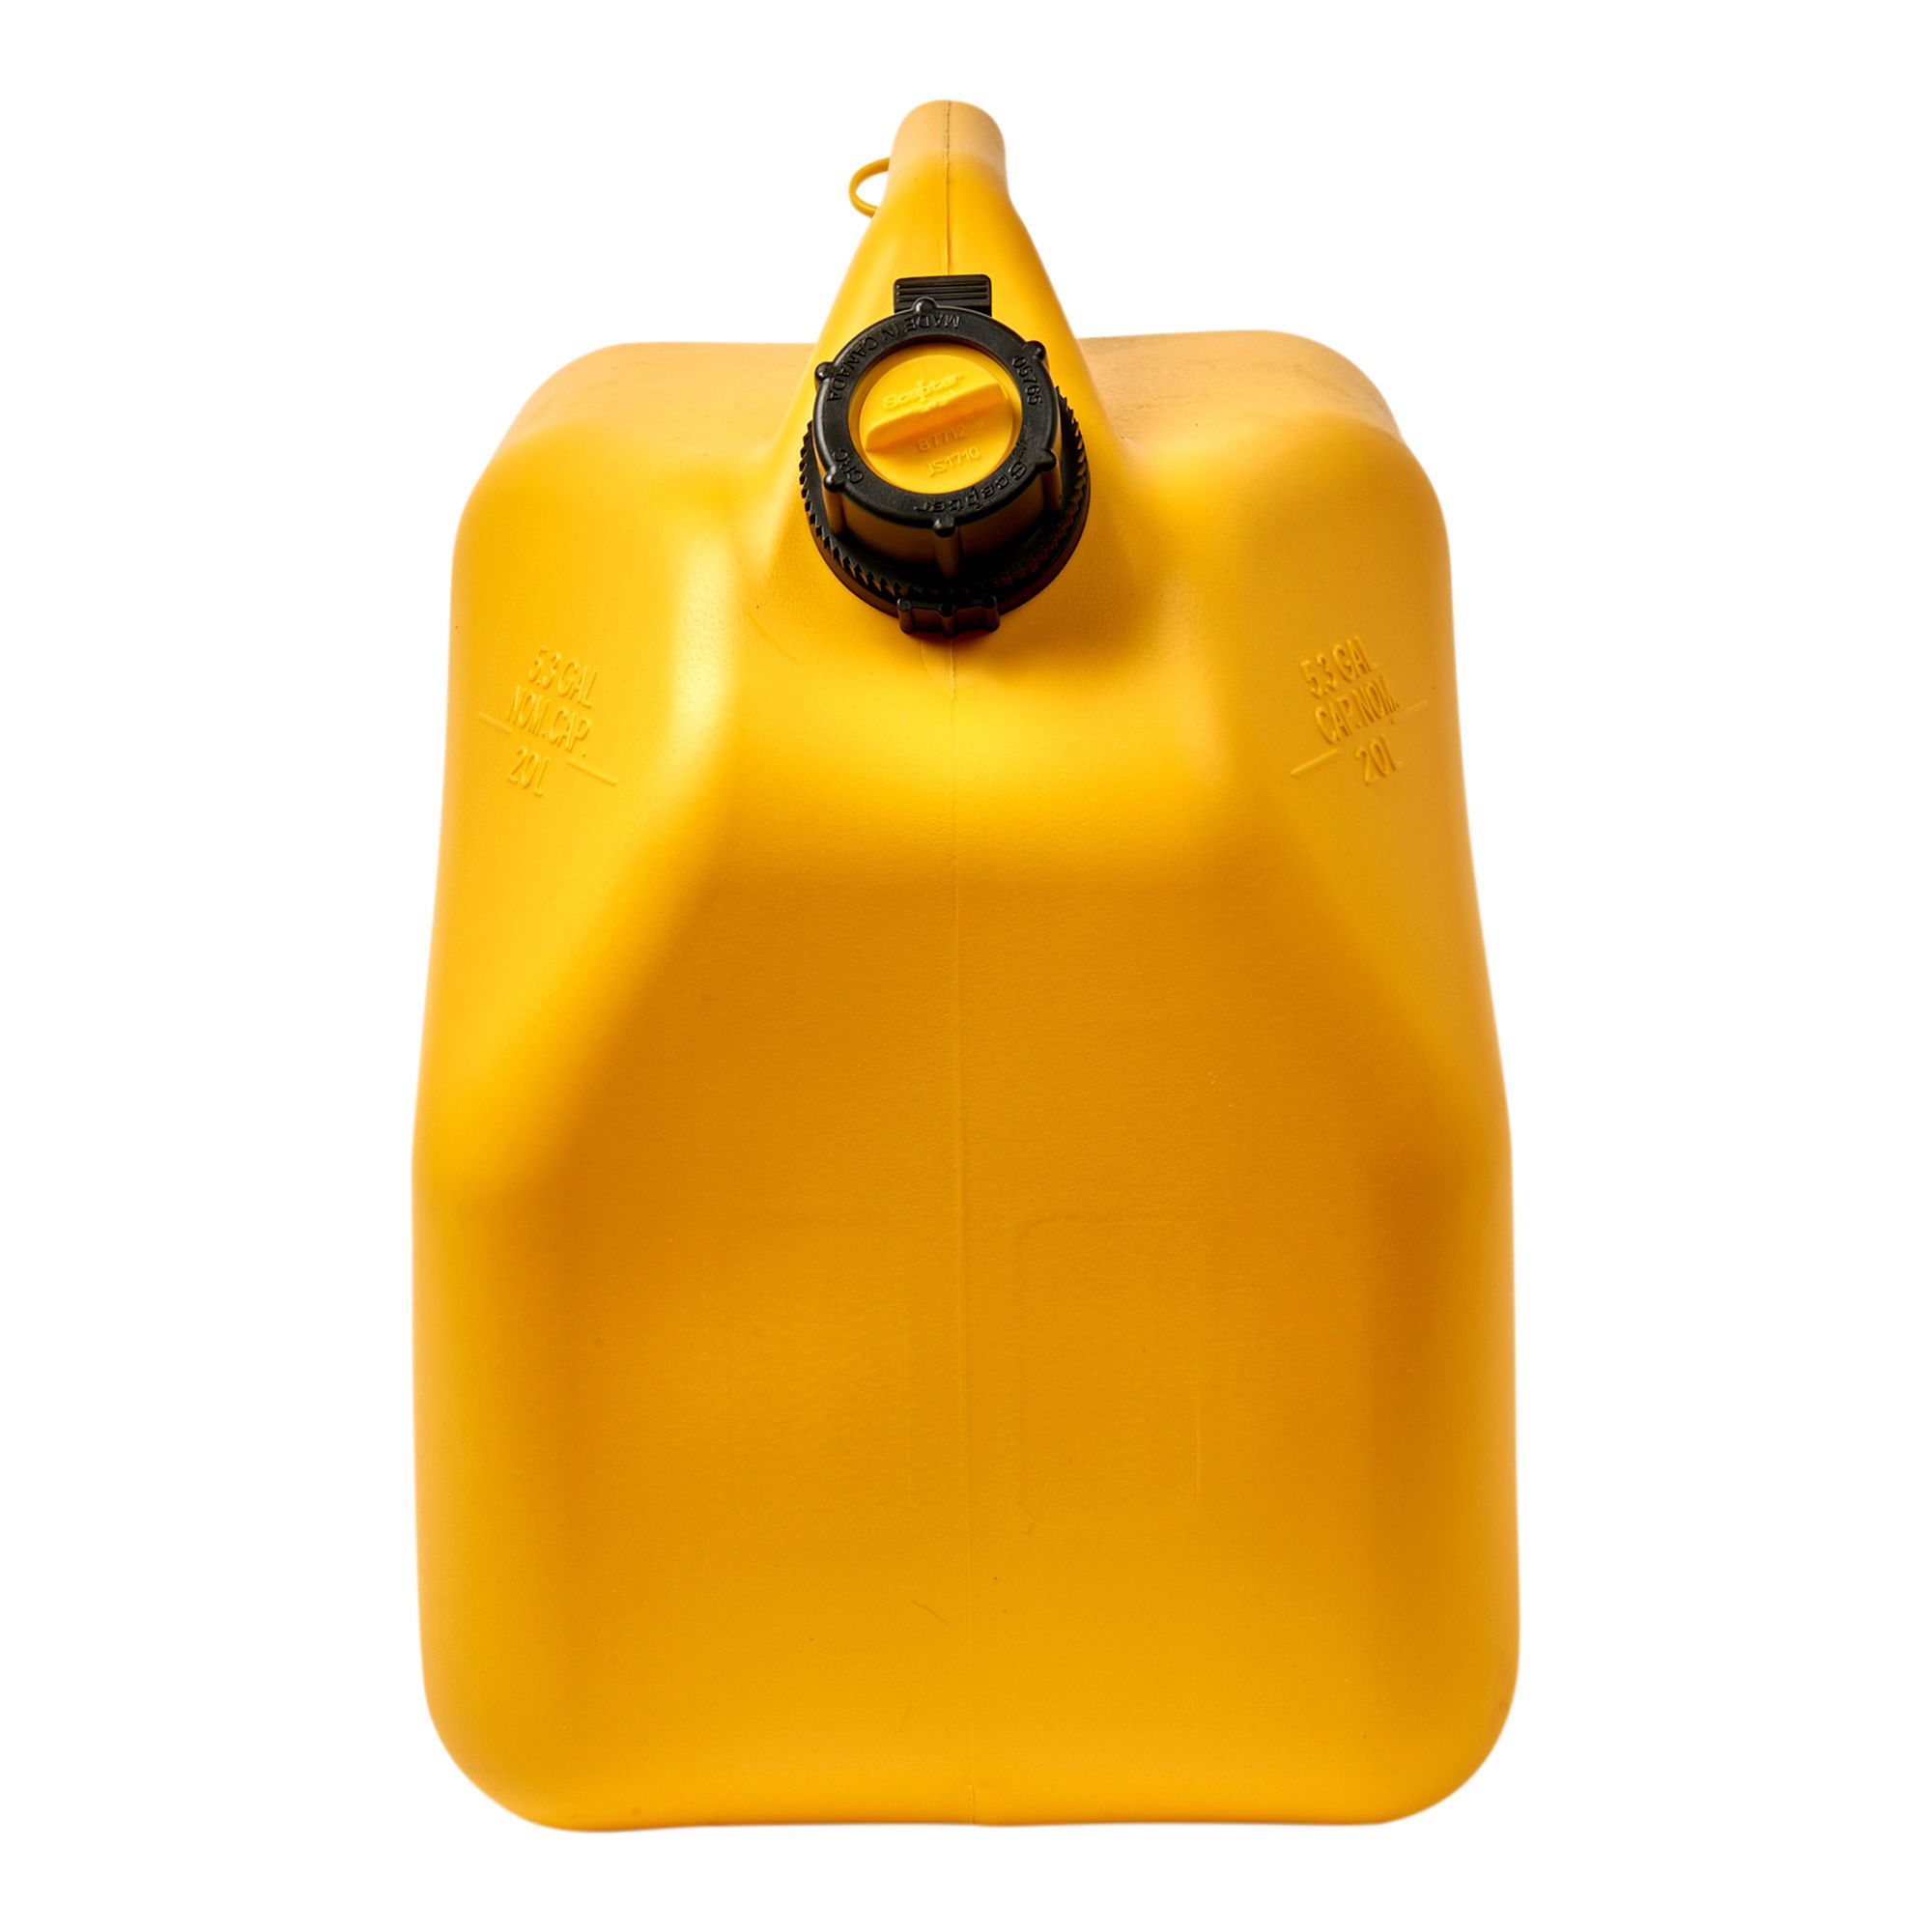 Bidon jaune pour le transport de diesel(fuel)07649 Scepter 20 Litres -  Pouliot Pièces Autos